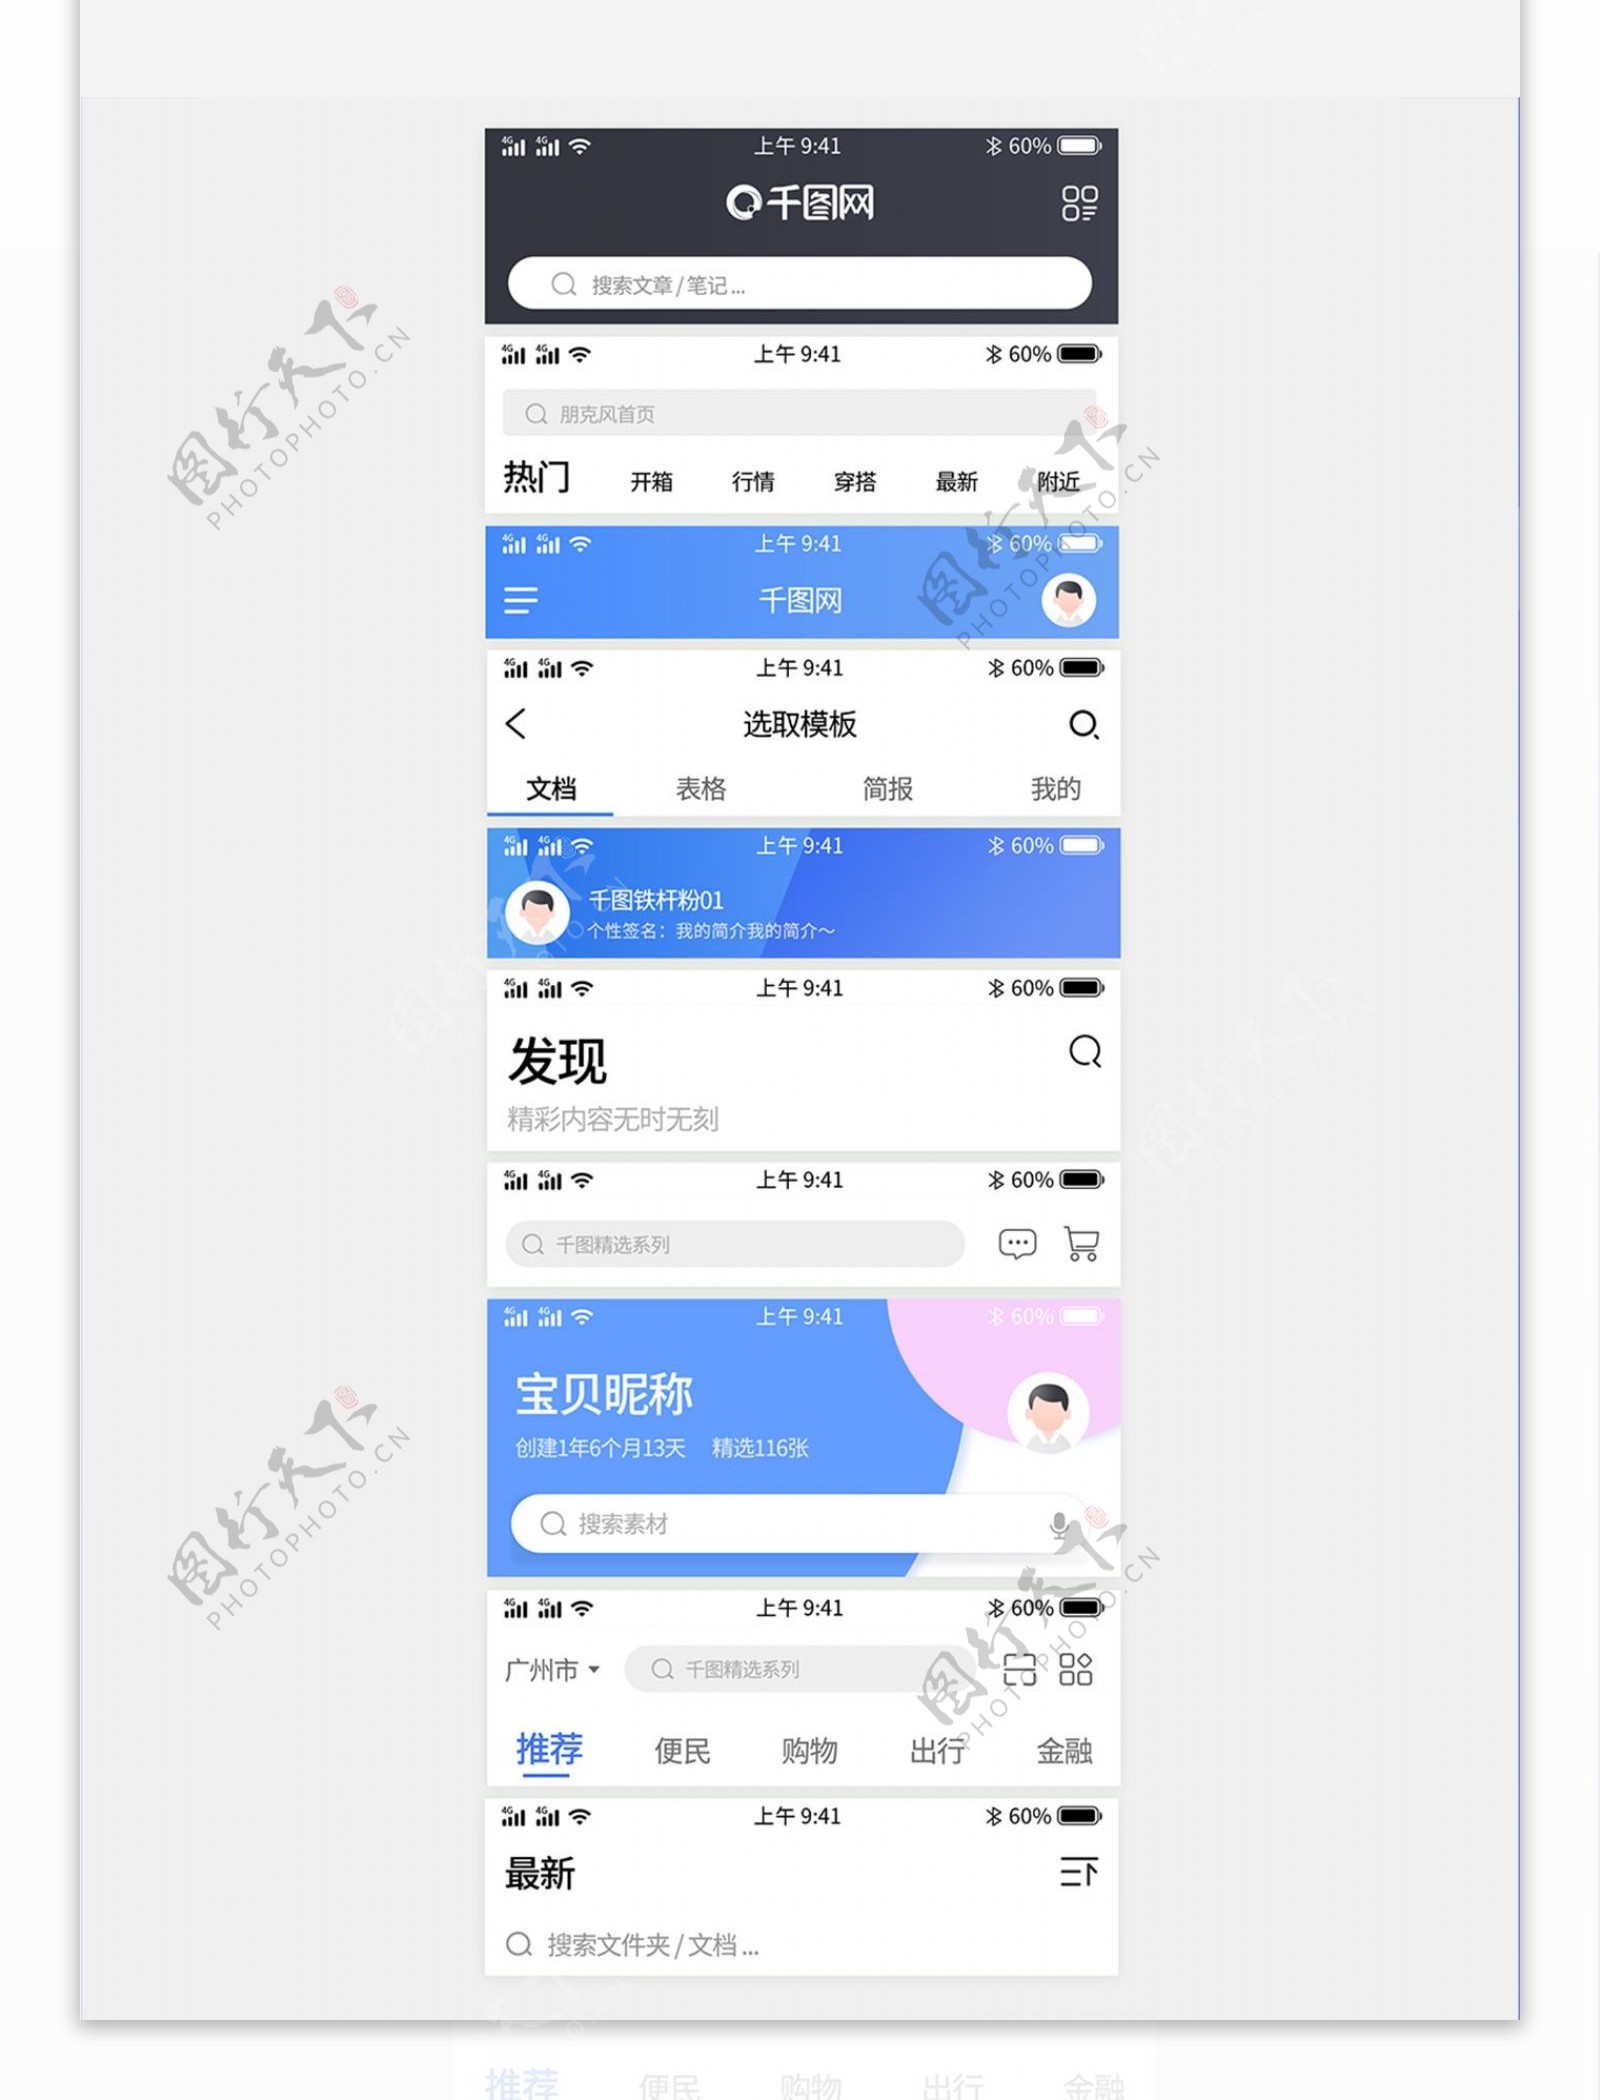 手机app顶部导航条状态栏样式UI设计